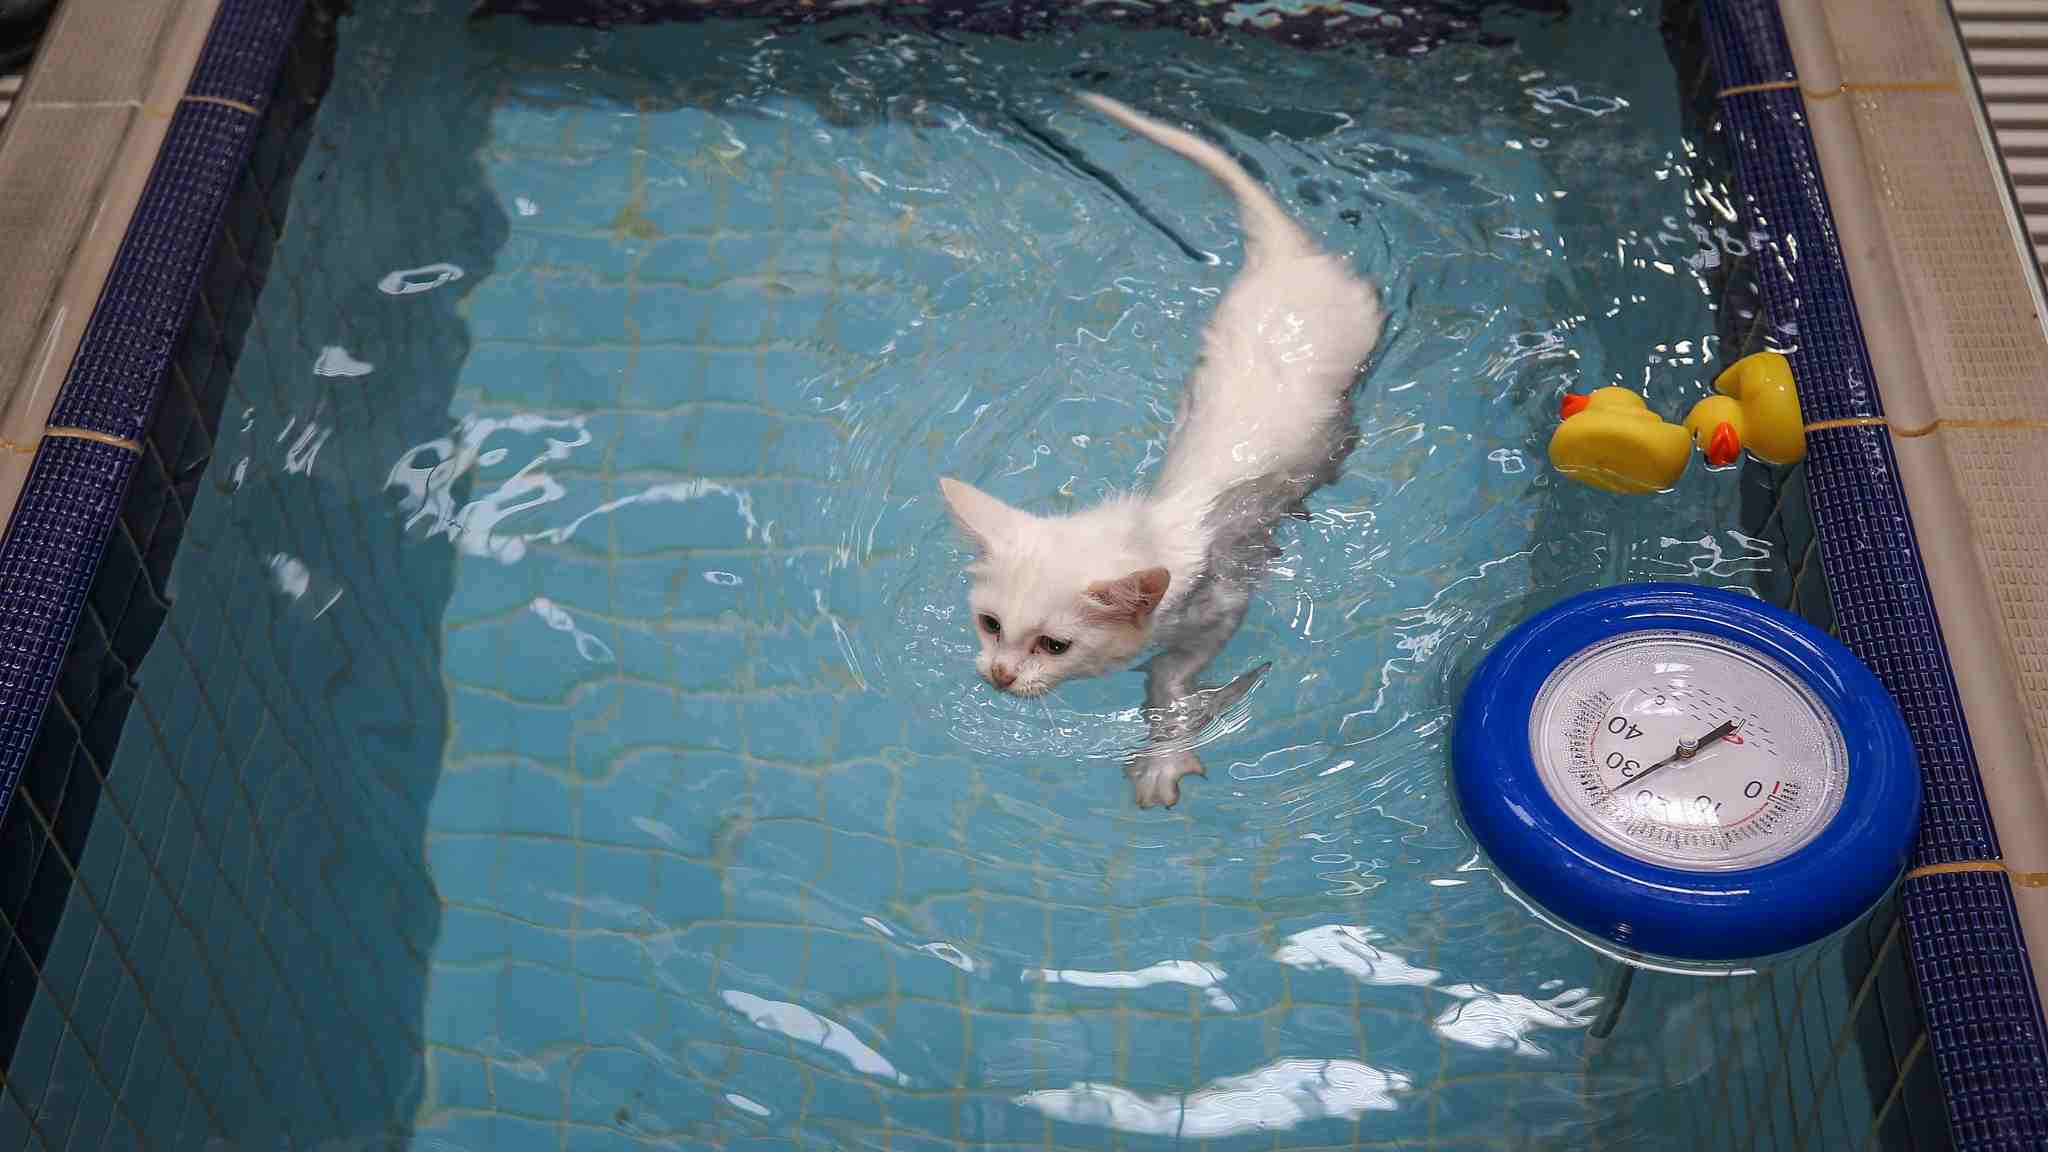 turkish cat swimming